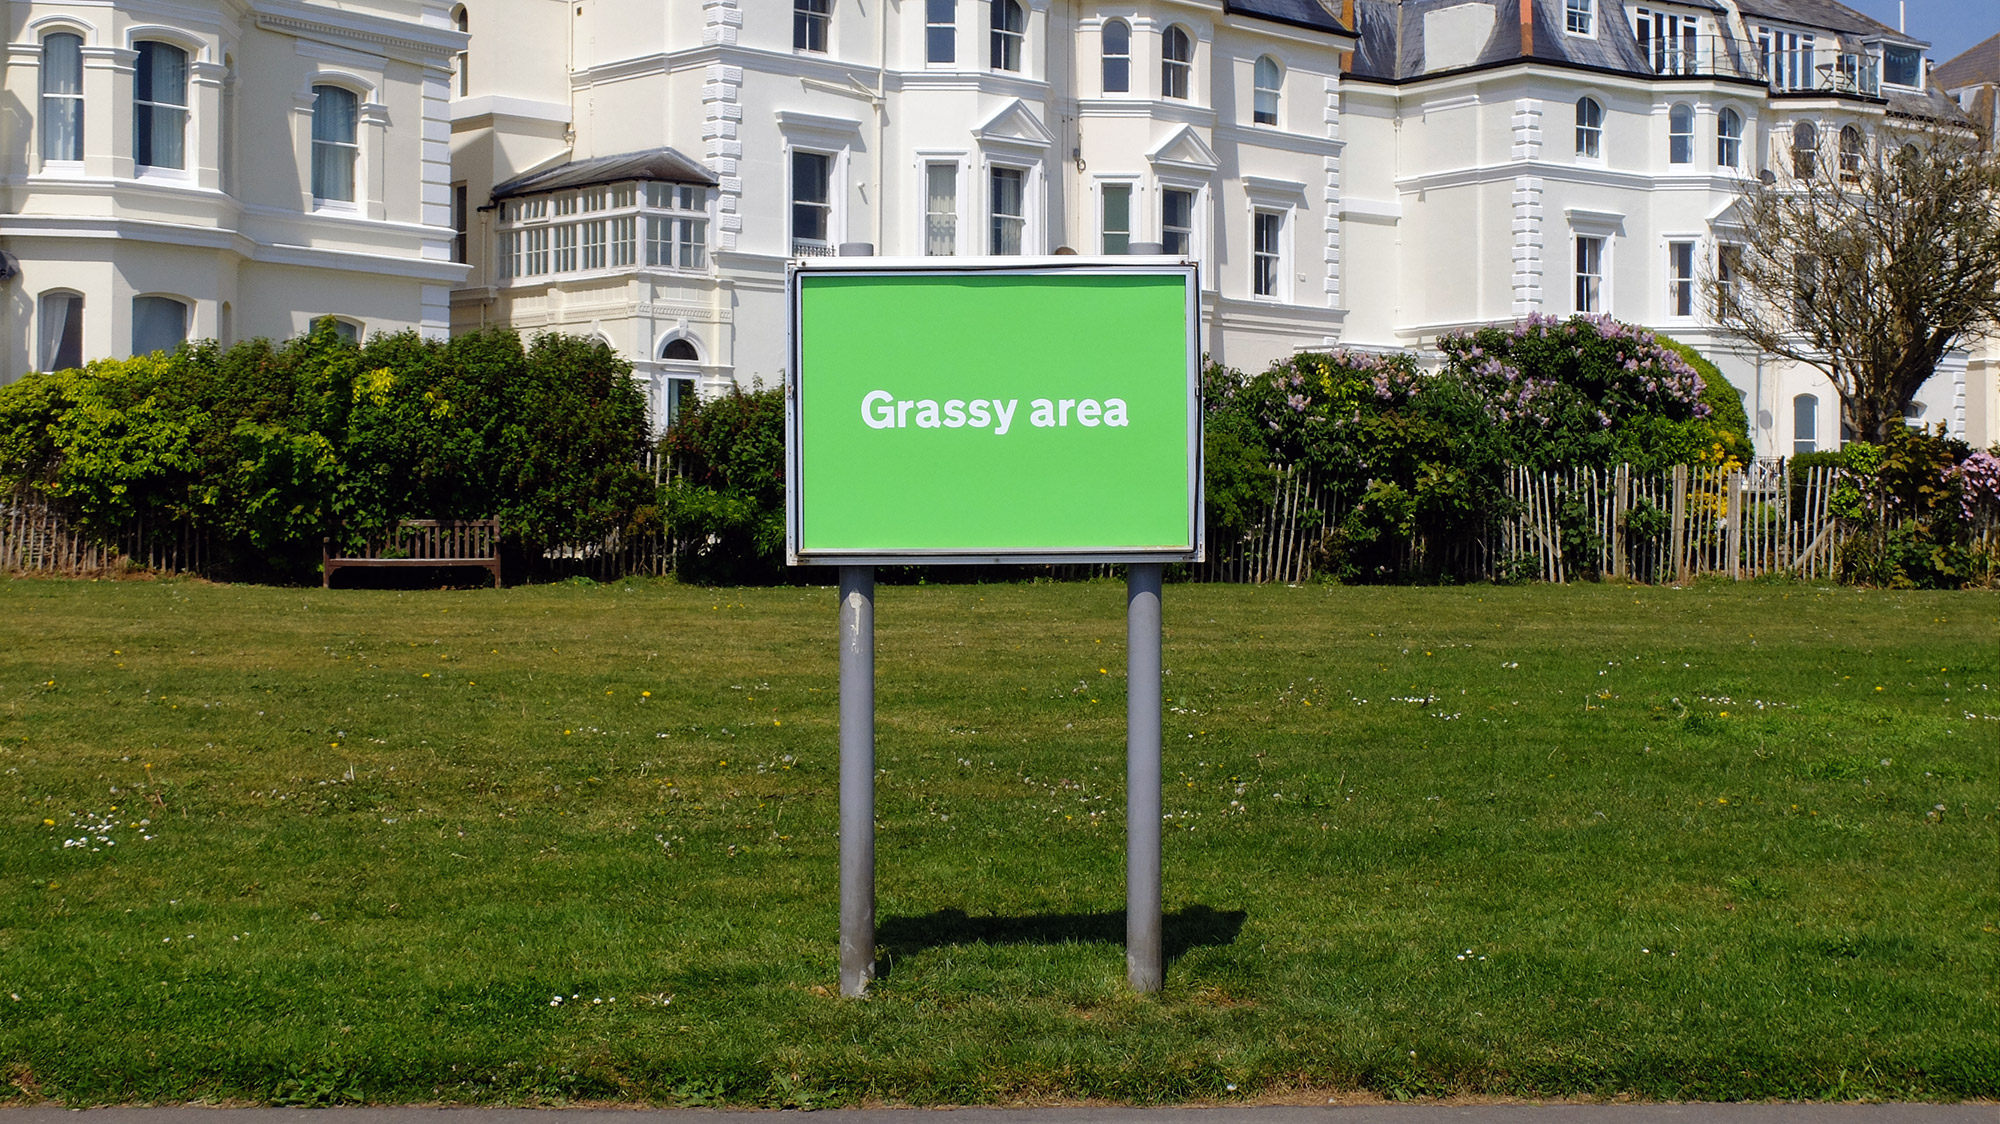 #018 - Grassy area